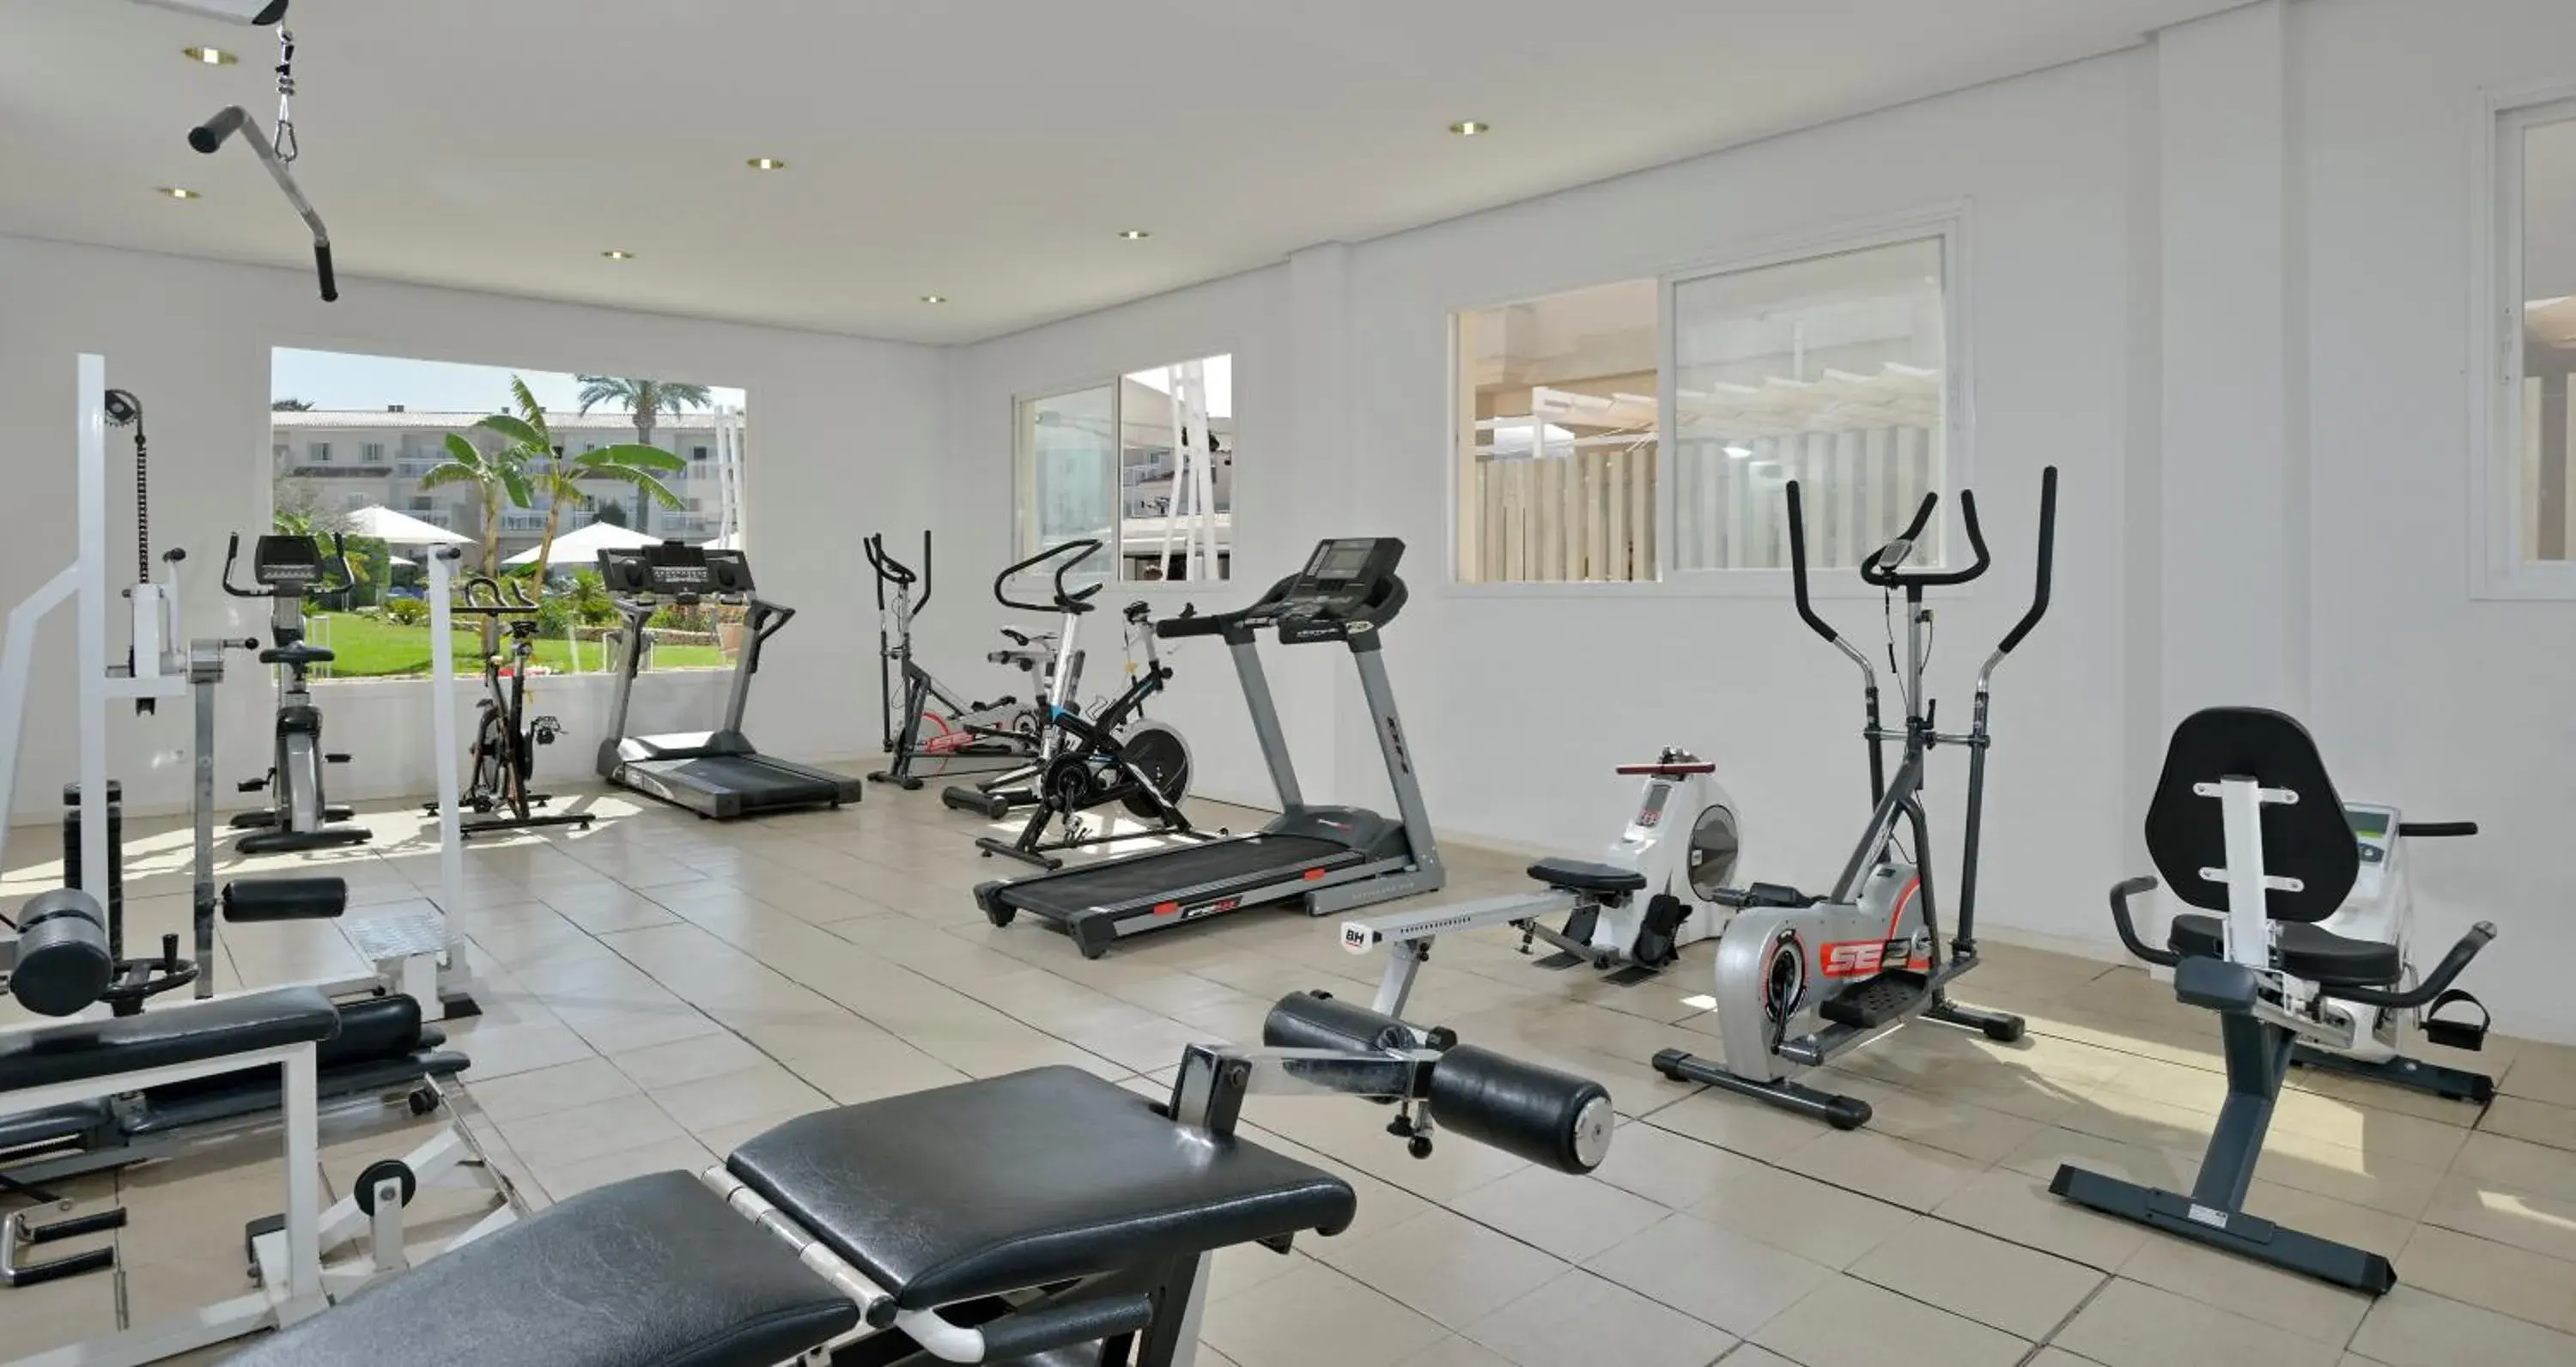 Fitness centre/facilities, Fitness Center/Facilities in Aparthotel Isla De Cabrera